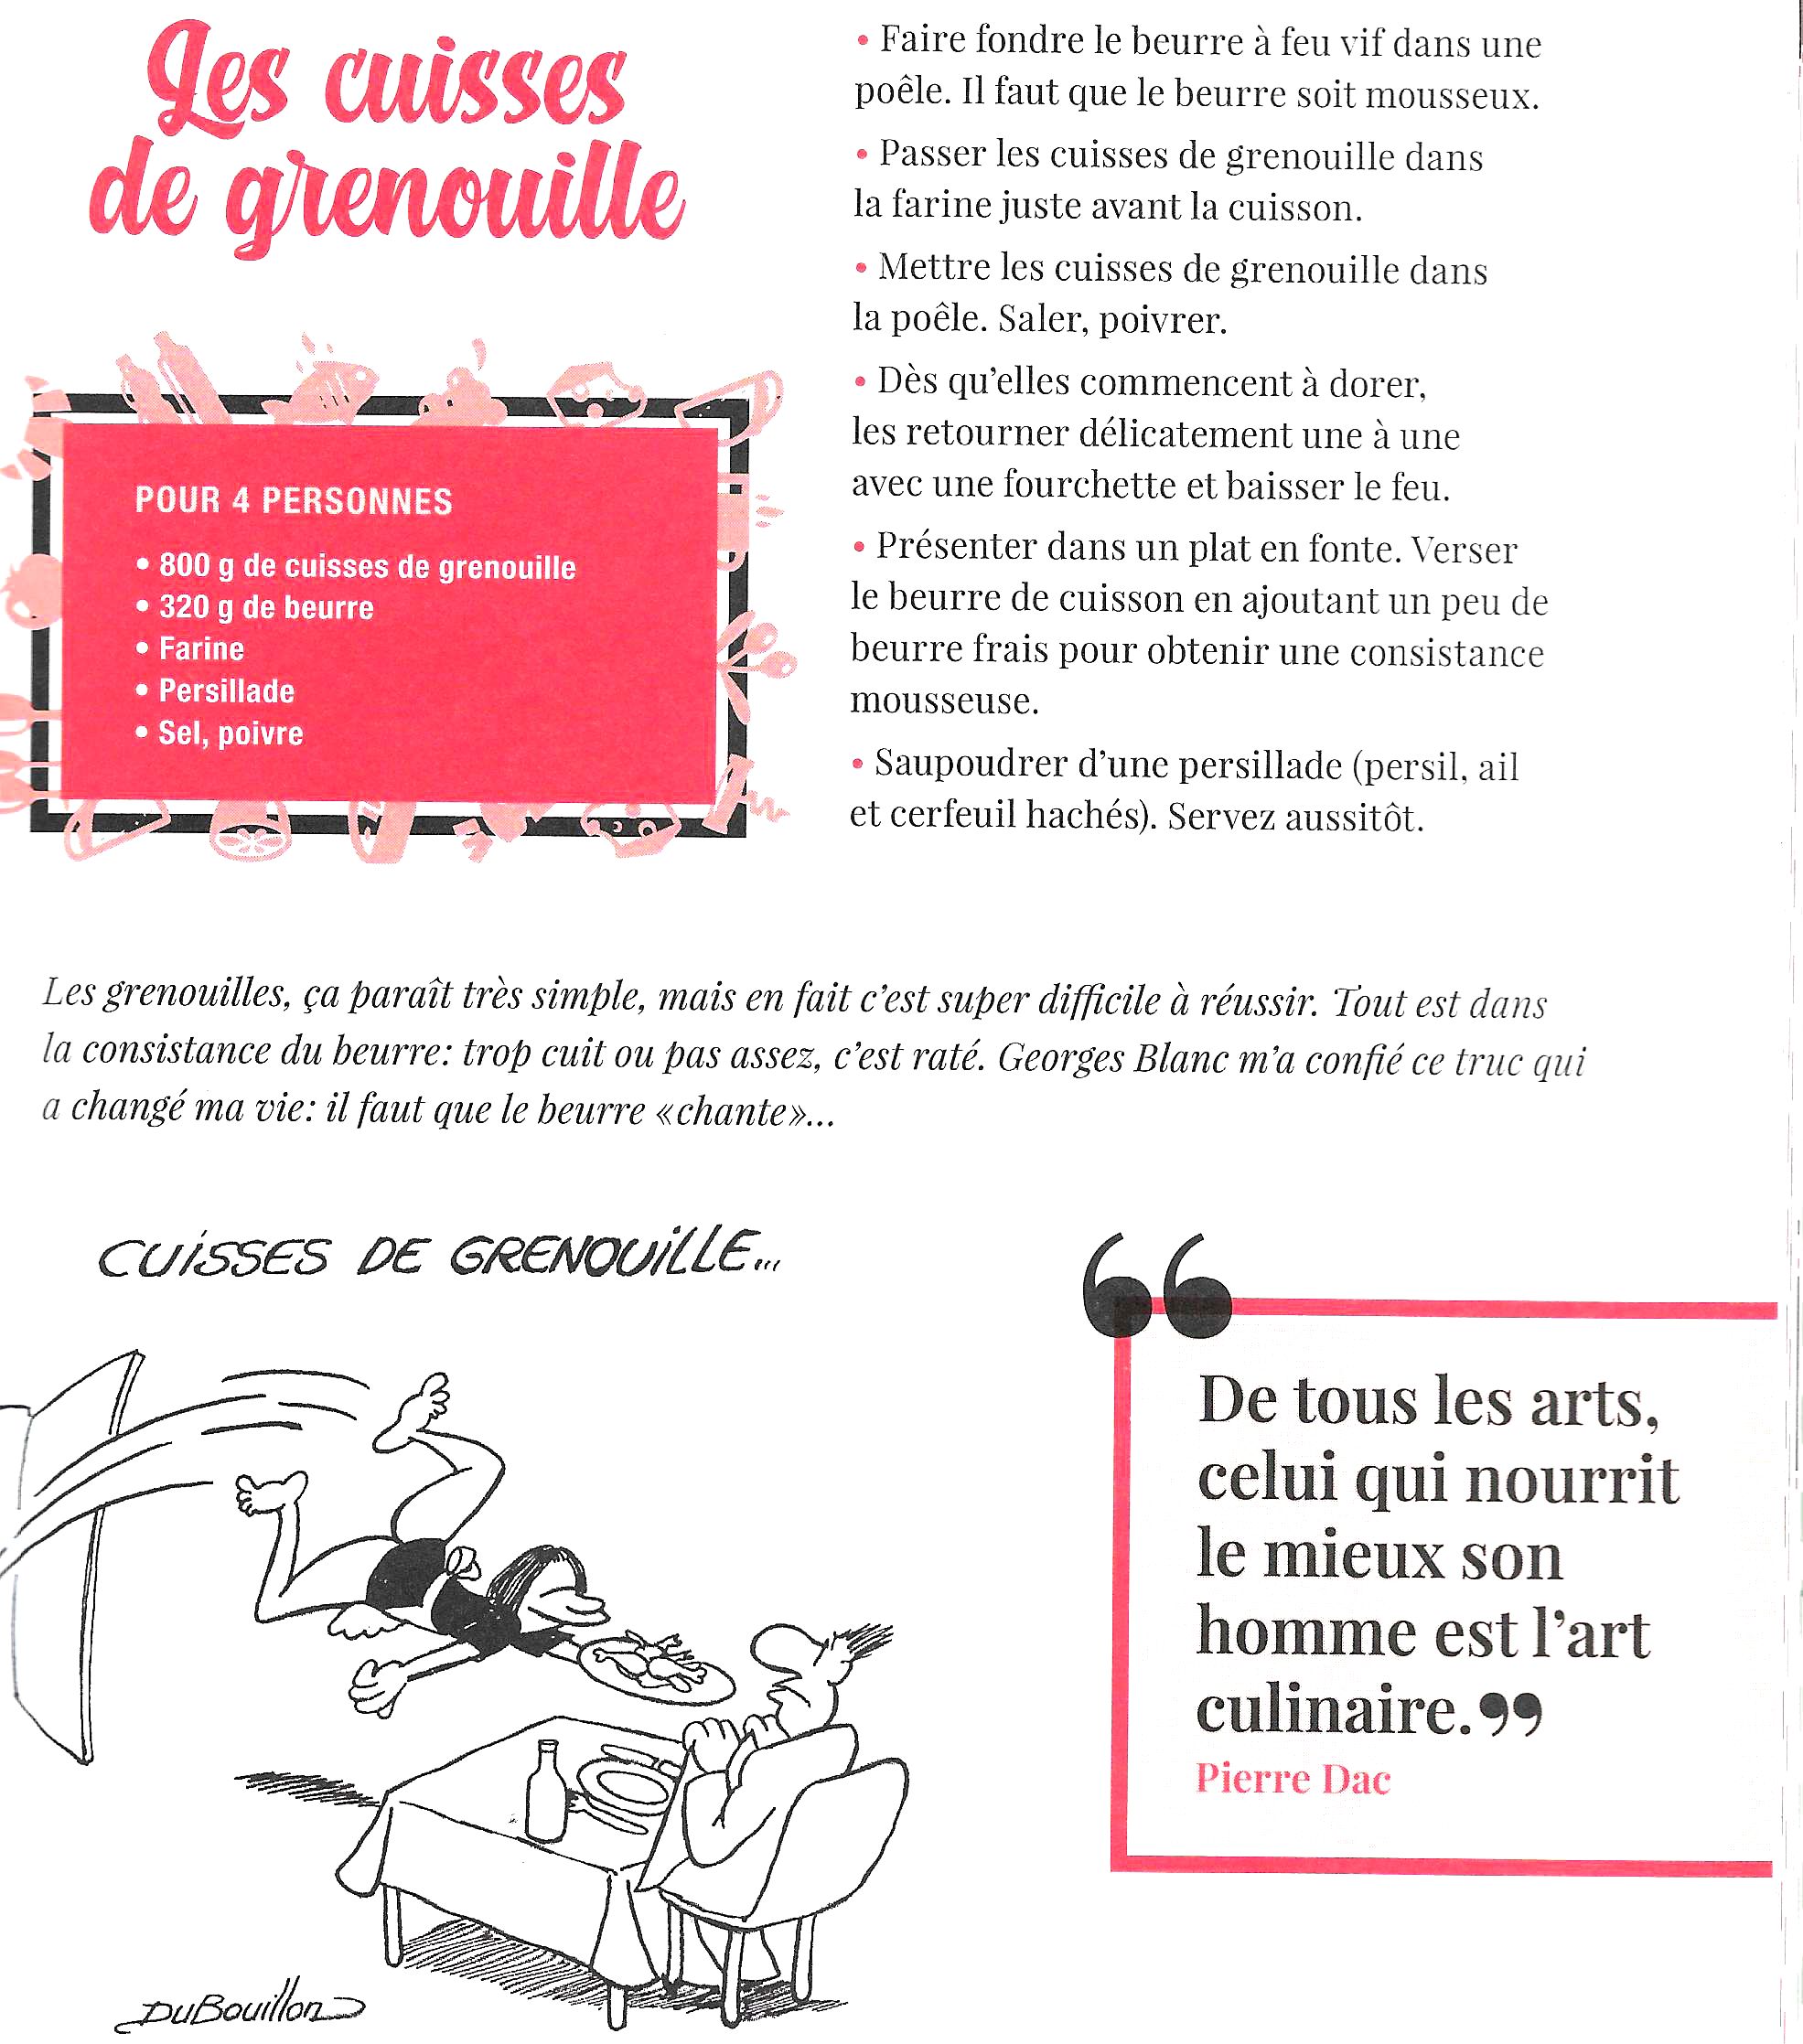 Dessins pour "L'almanach gourmand" de Laurent Gerra